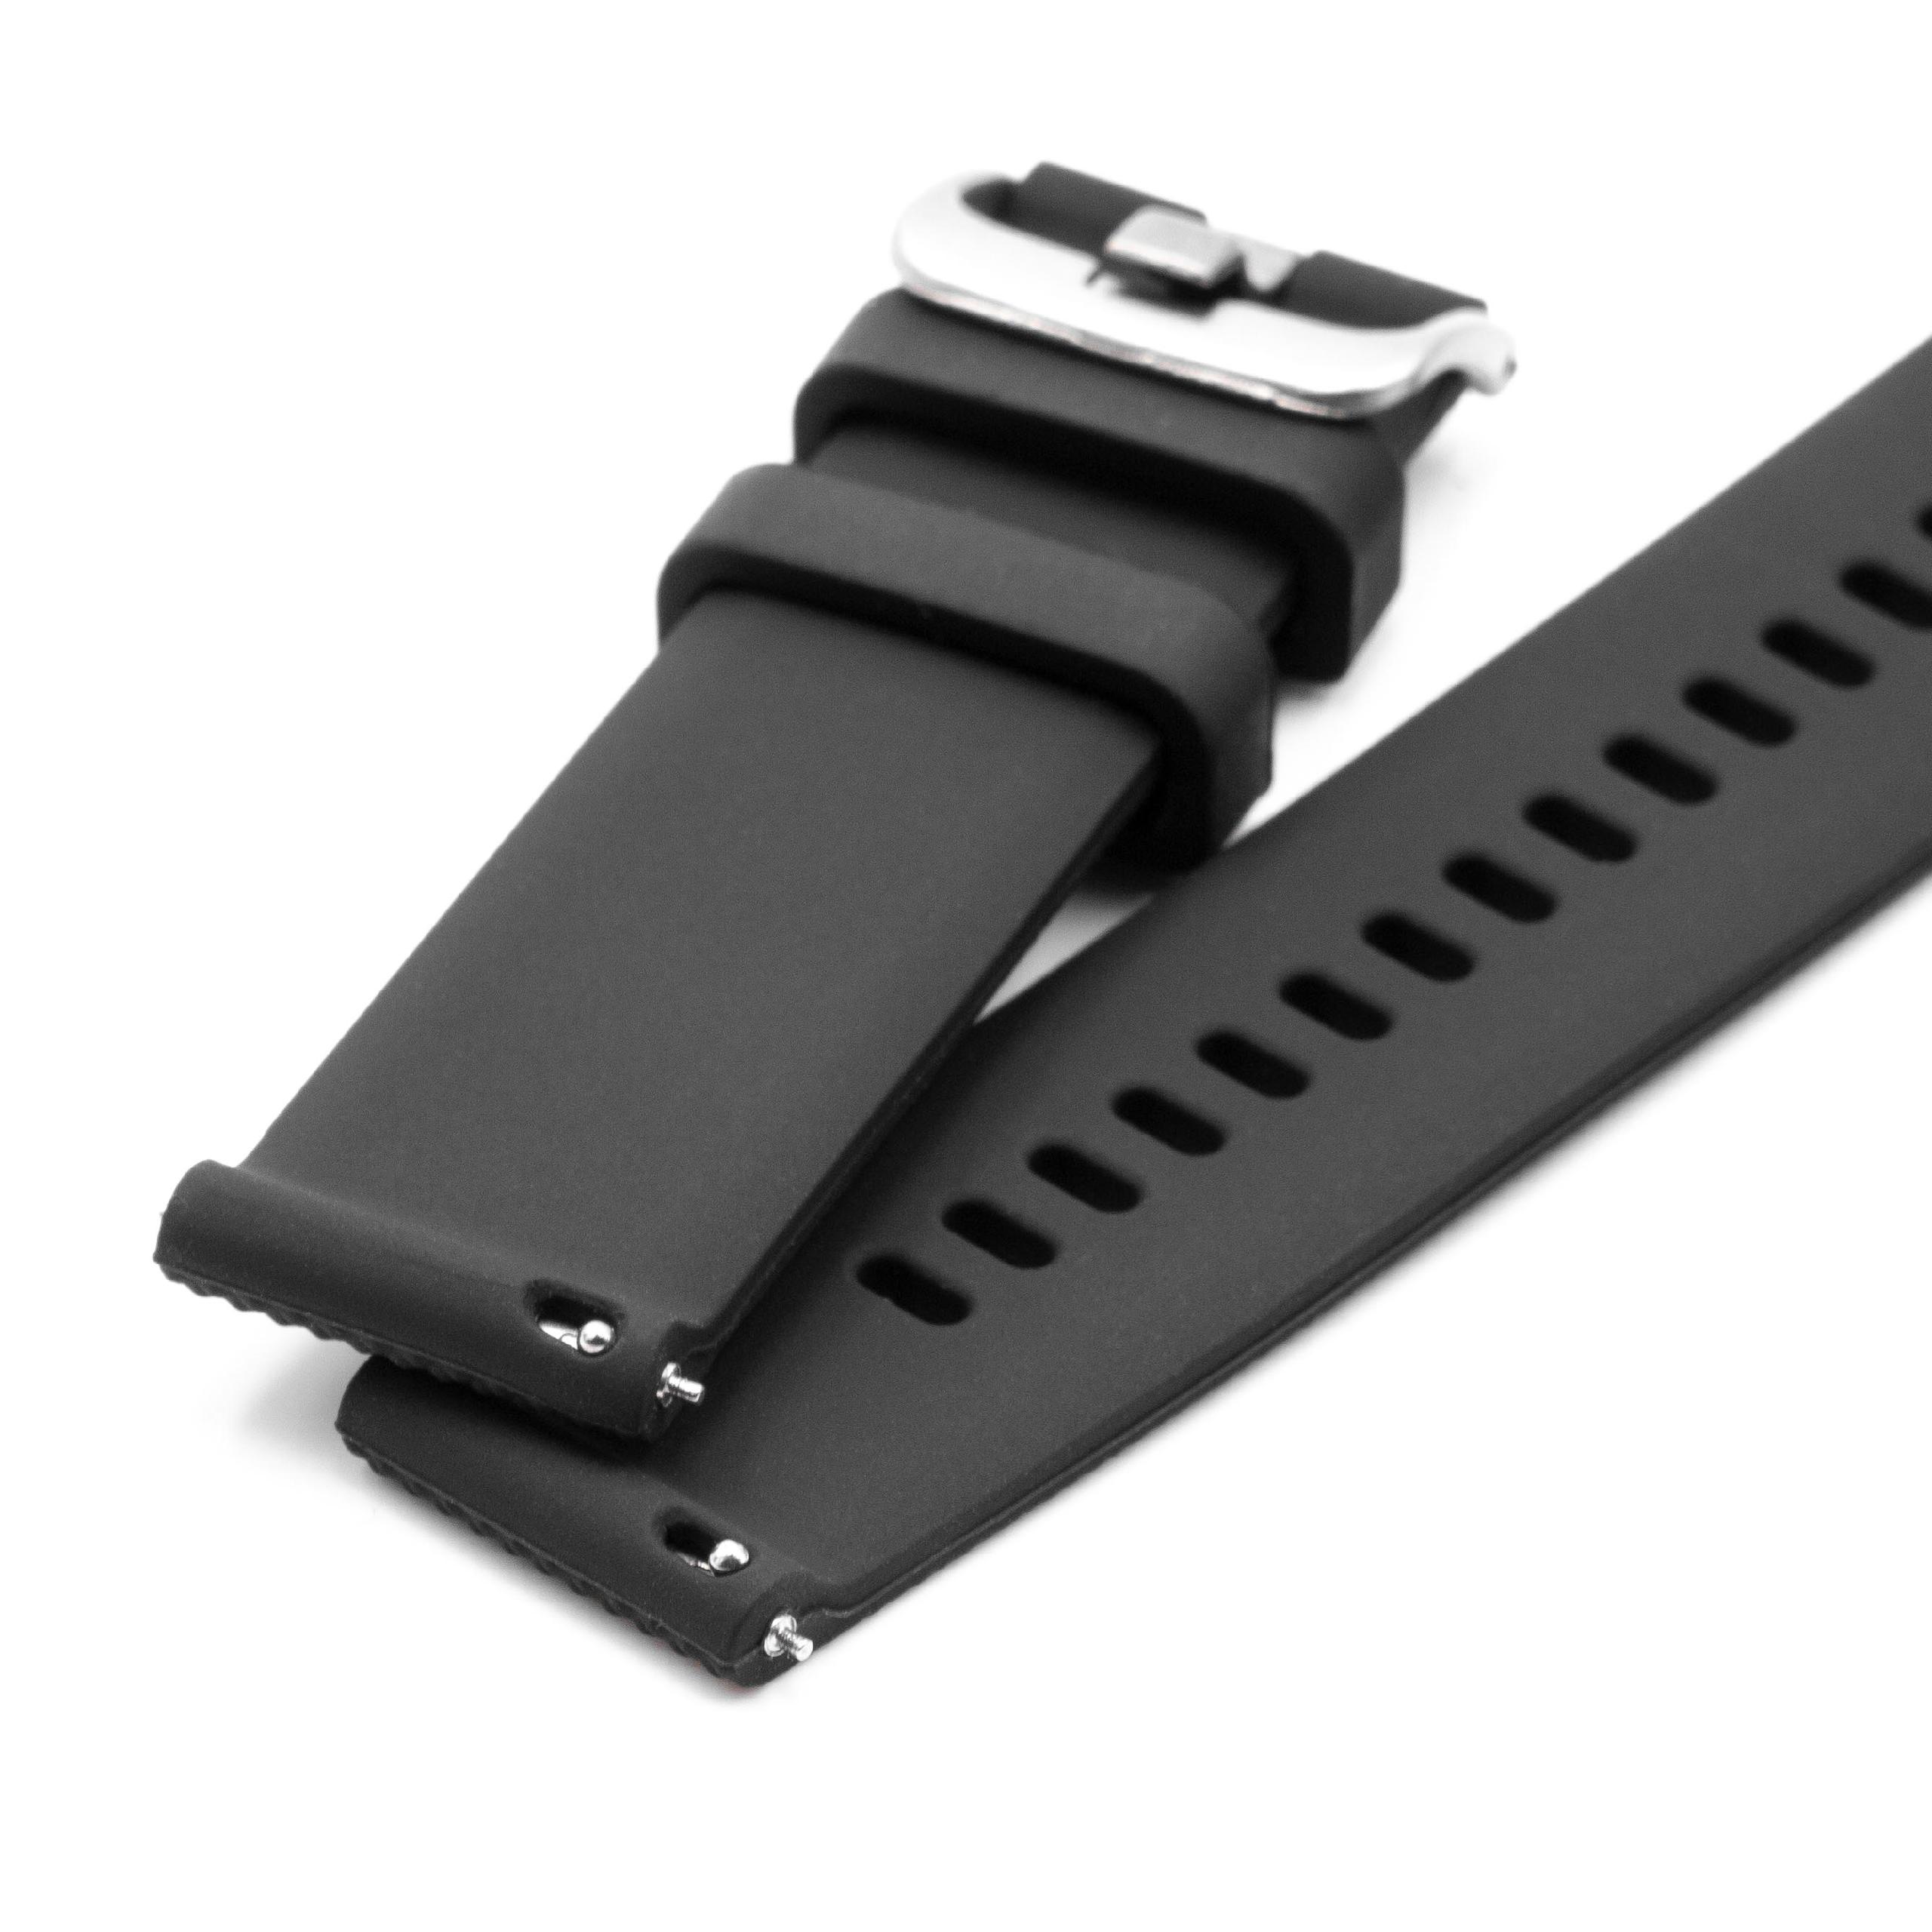 Pasek S do smartwatch Samsung Galaxy Watch - obwód nadgarstka do 226 mm , silikon, czarny